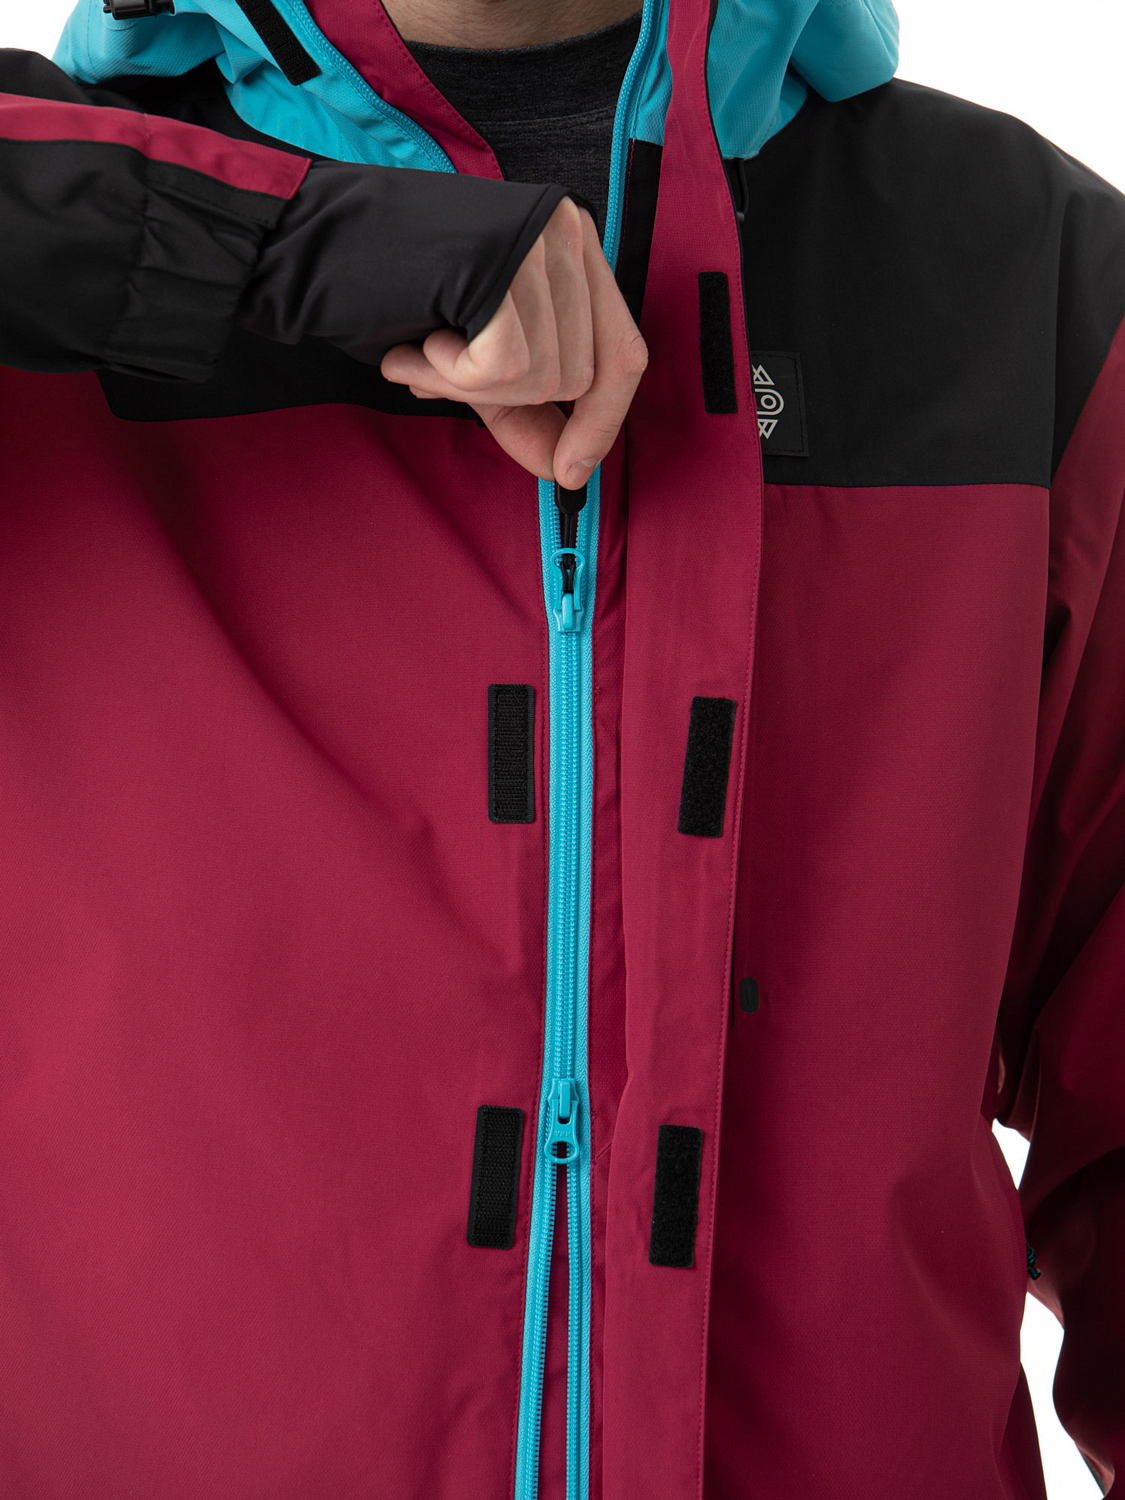 Комбинезон сноубордический AIRBLASTER Beast Suit Plum